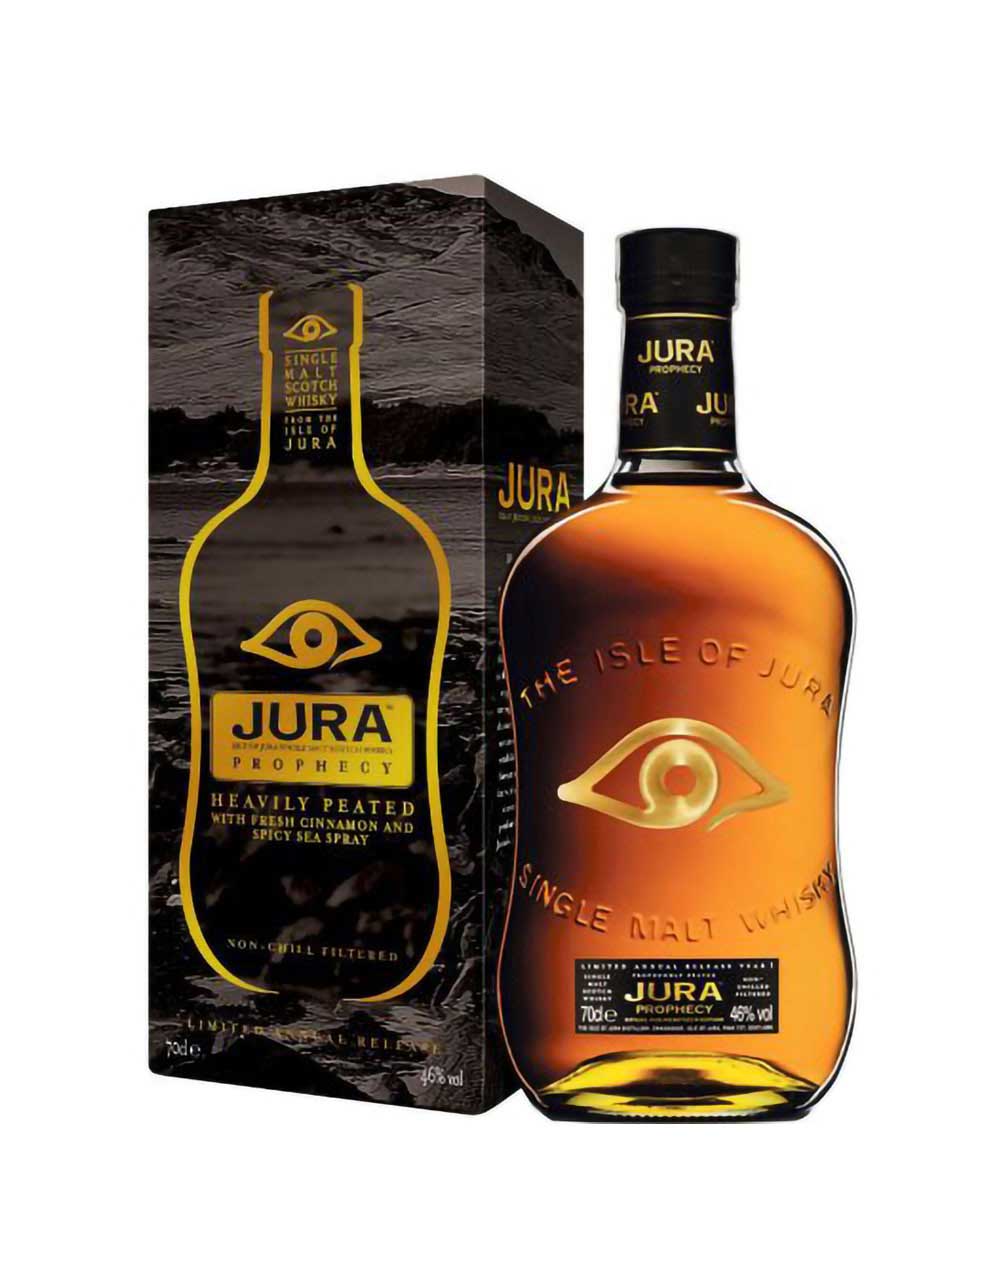 Jura Prophecy Single Malt Scotch Whisky